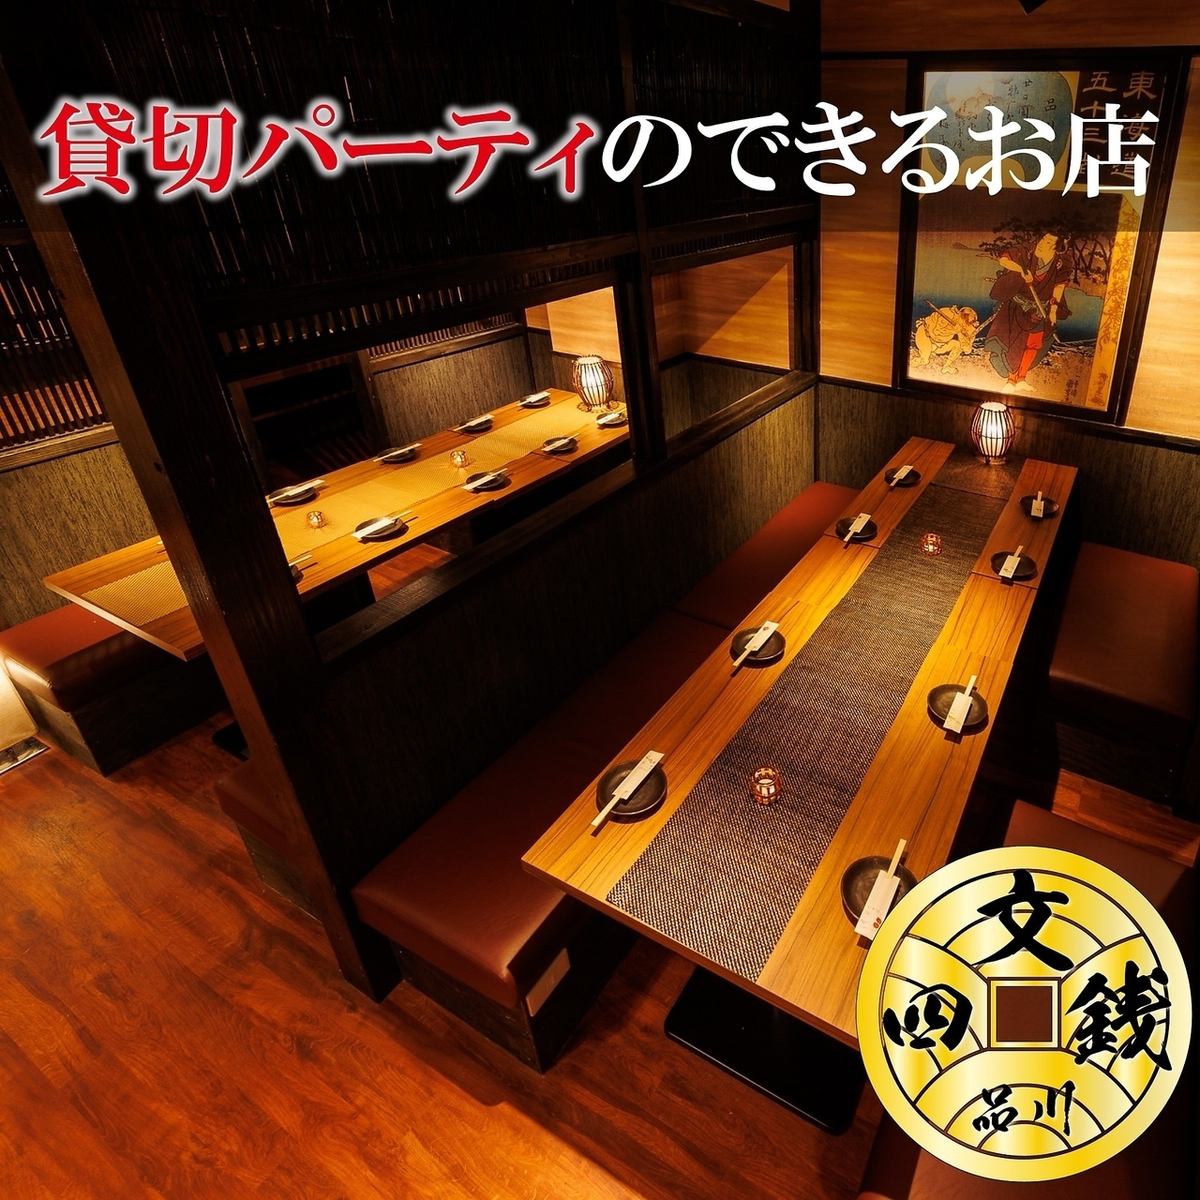 无限畅饮3,480日元（含税）～!!还有多种豪华套餐！